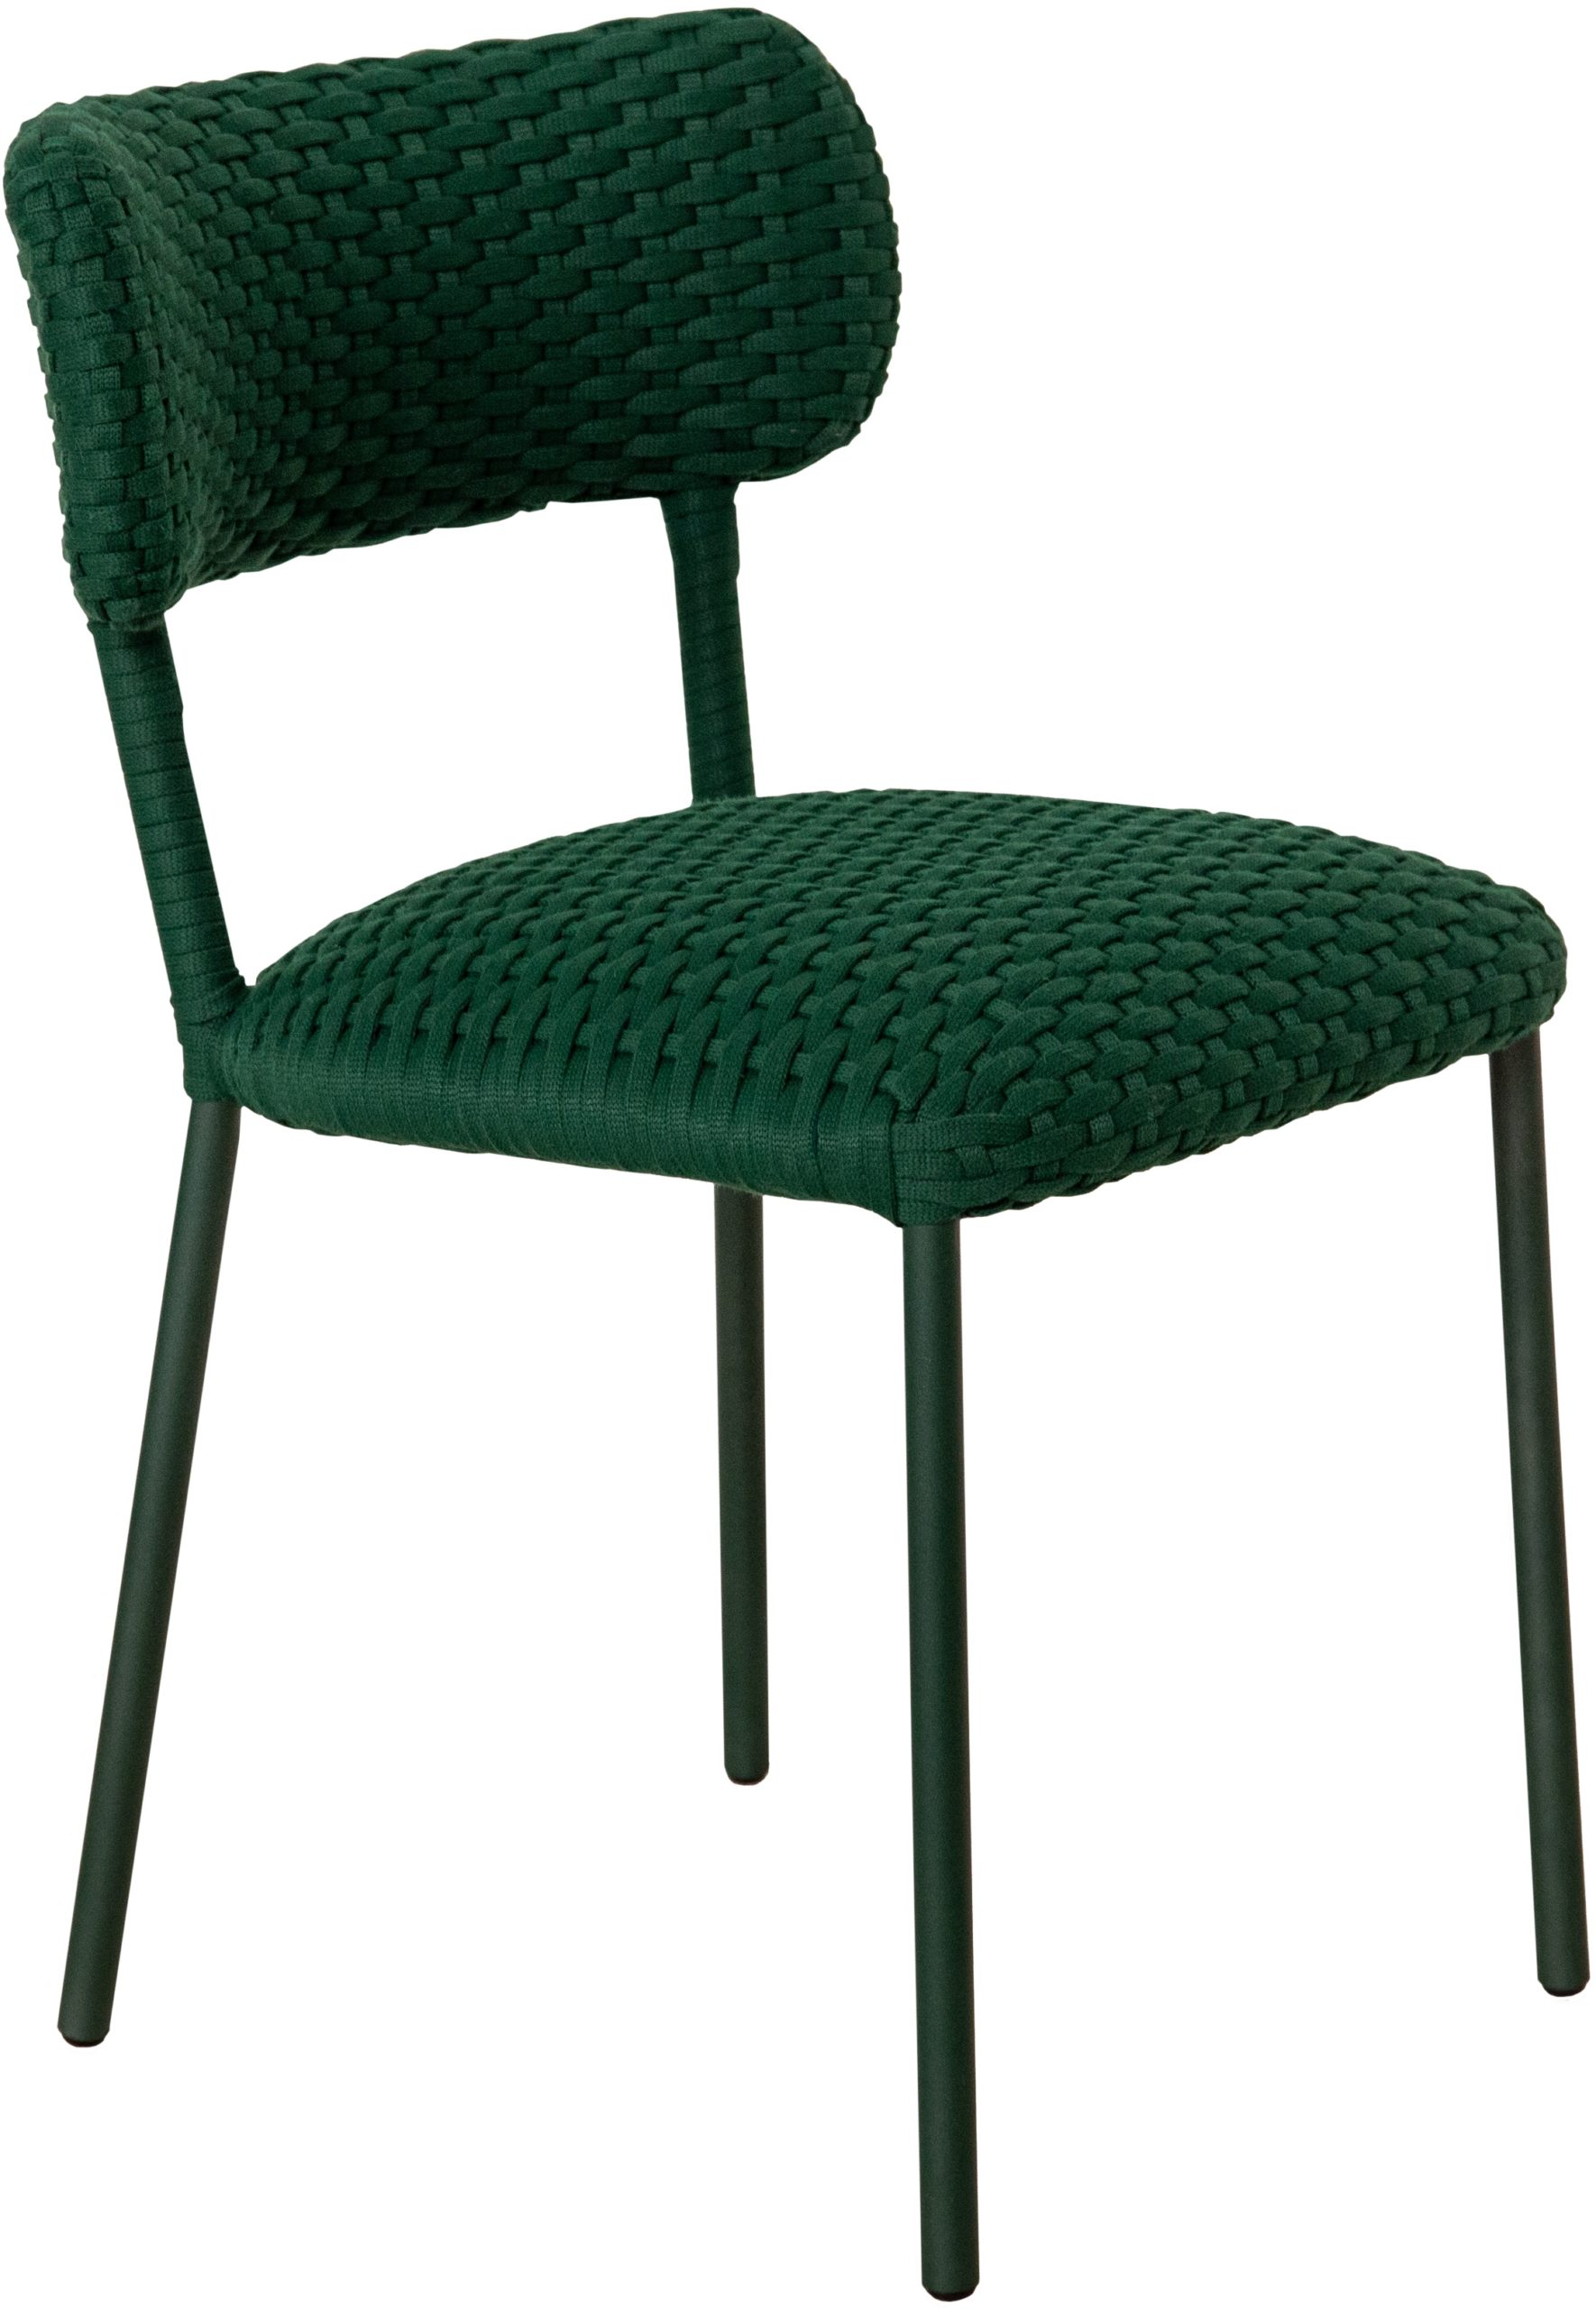 IBTW: Cadeira Samui, design do Studio IBTW